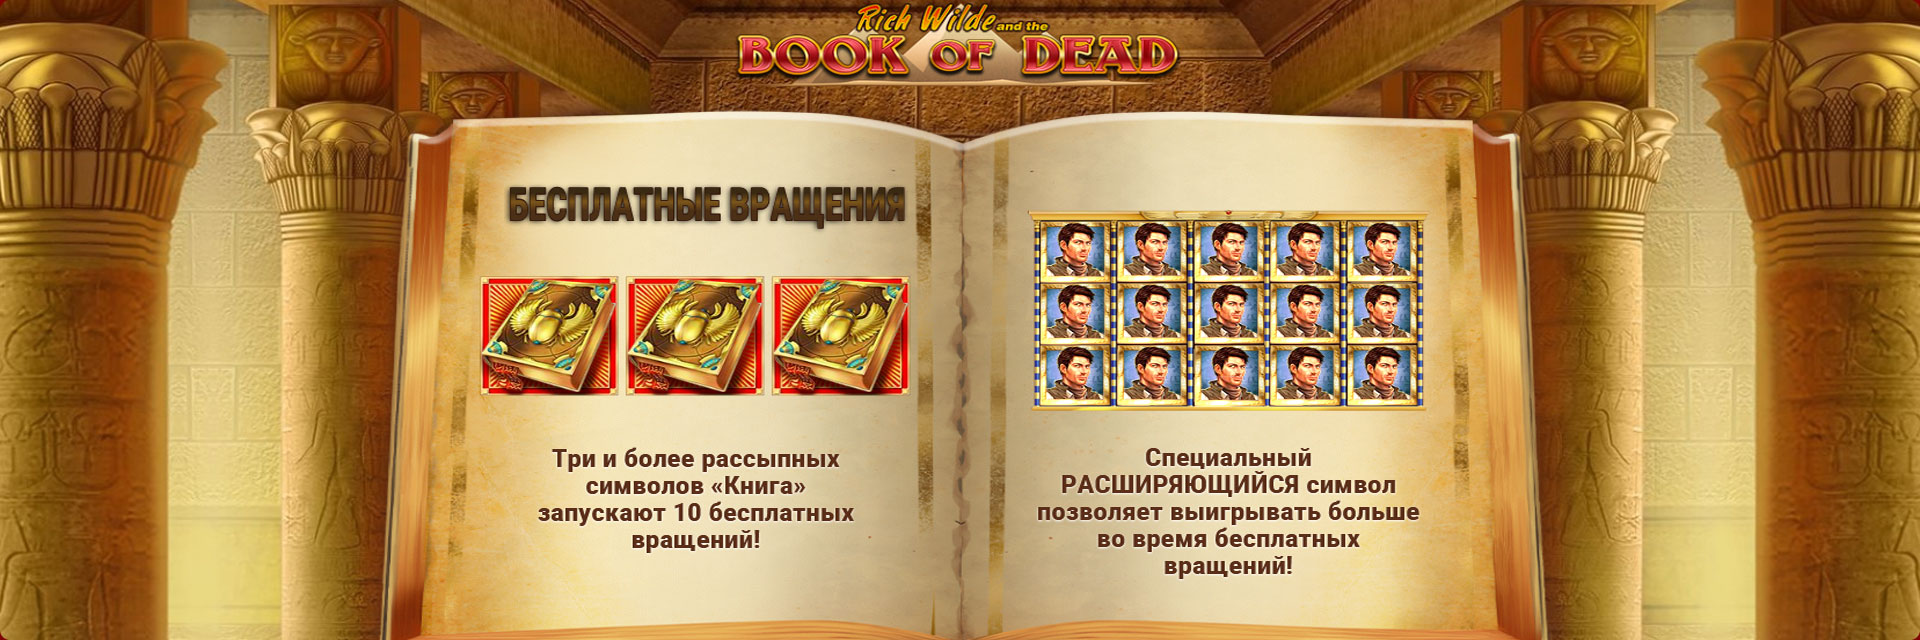 Игровой автомат Книга мертвых.